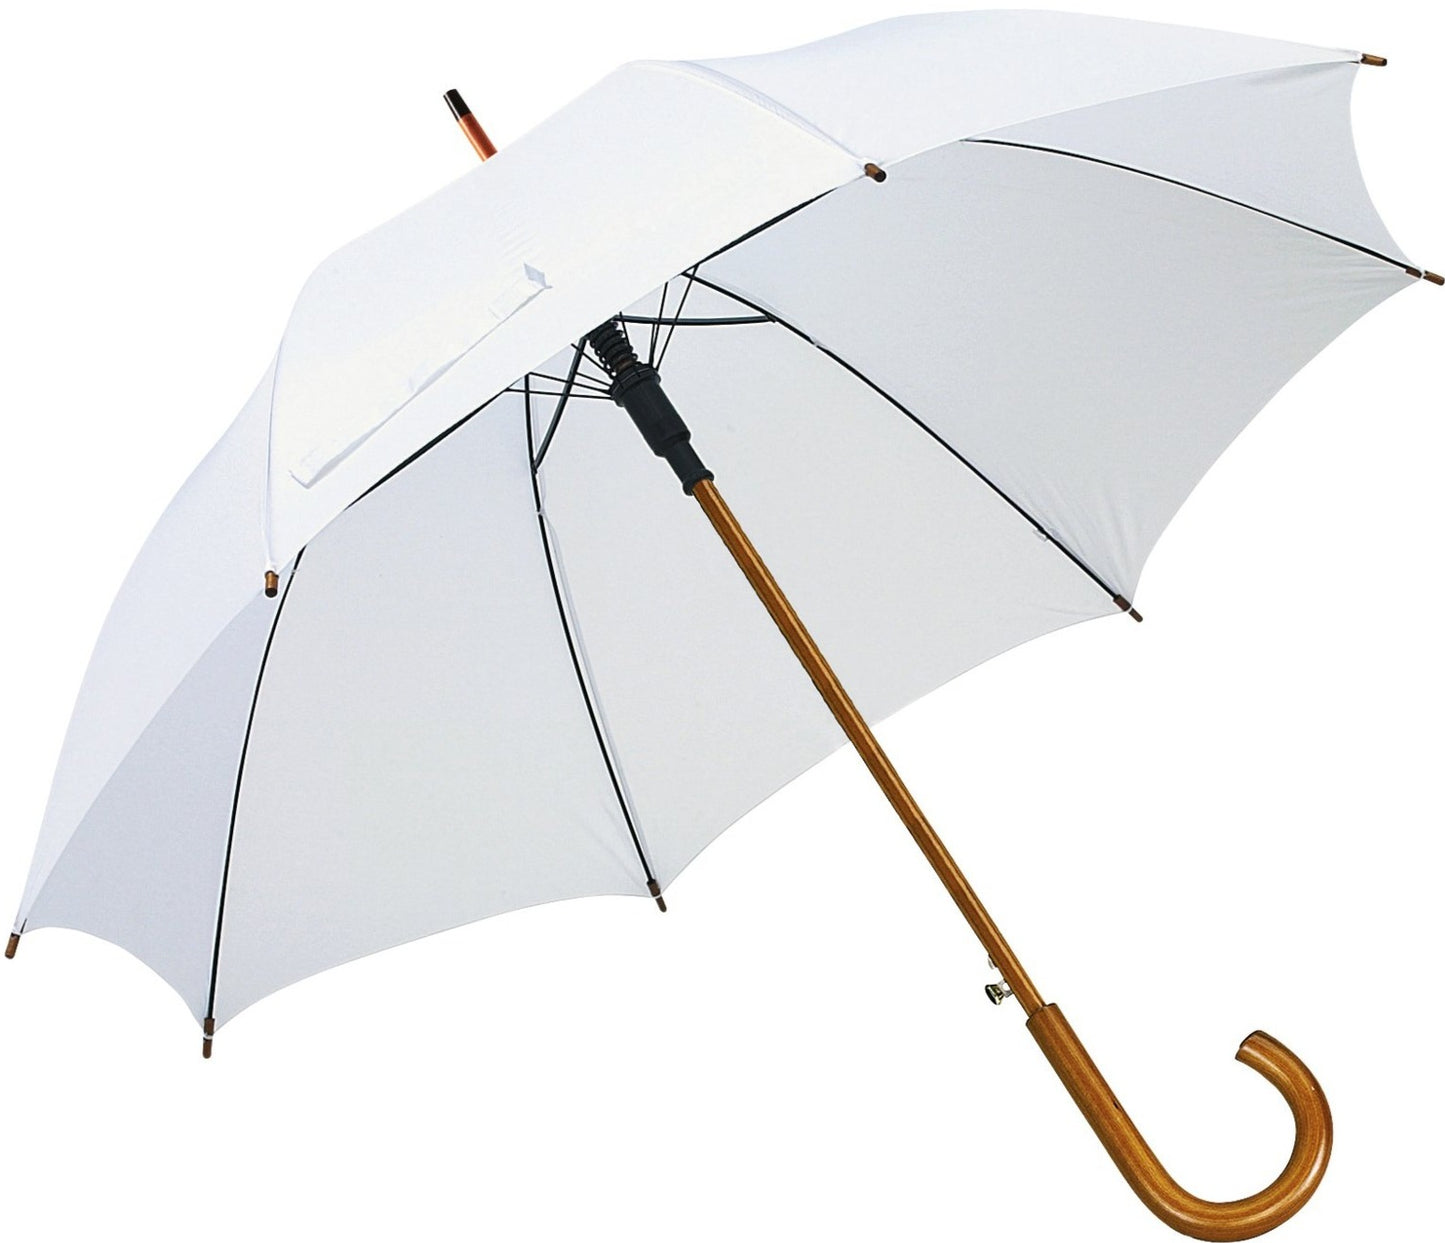 Λευκή ομπρέλα βροχής, αυτόματη, με ξύλινη κυρτή λαβή.